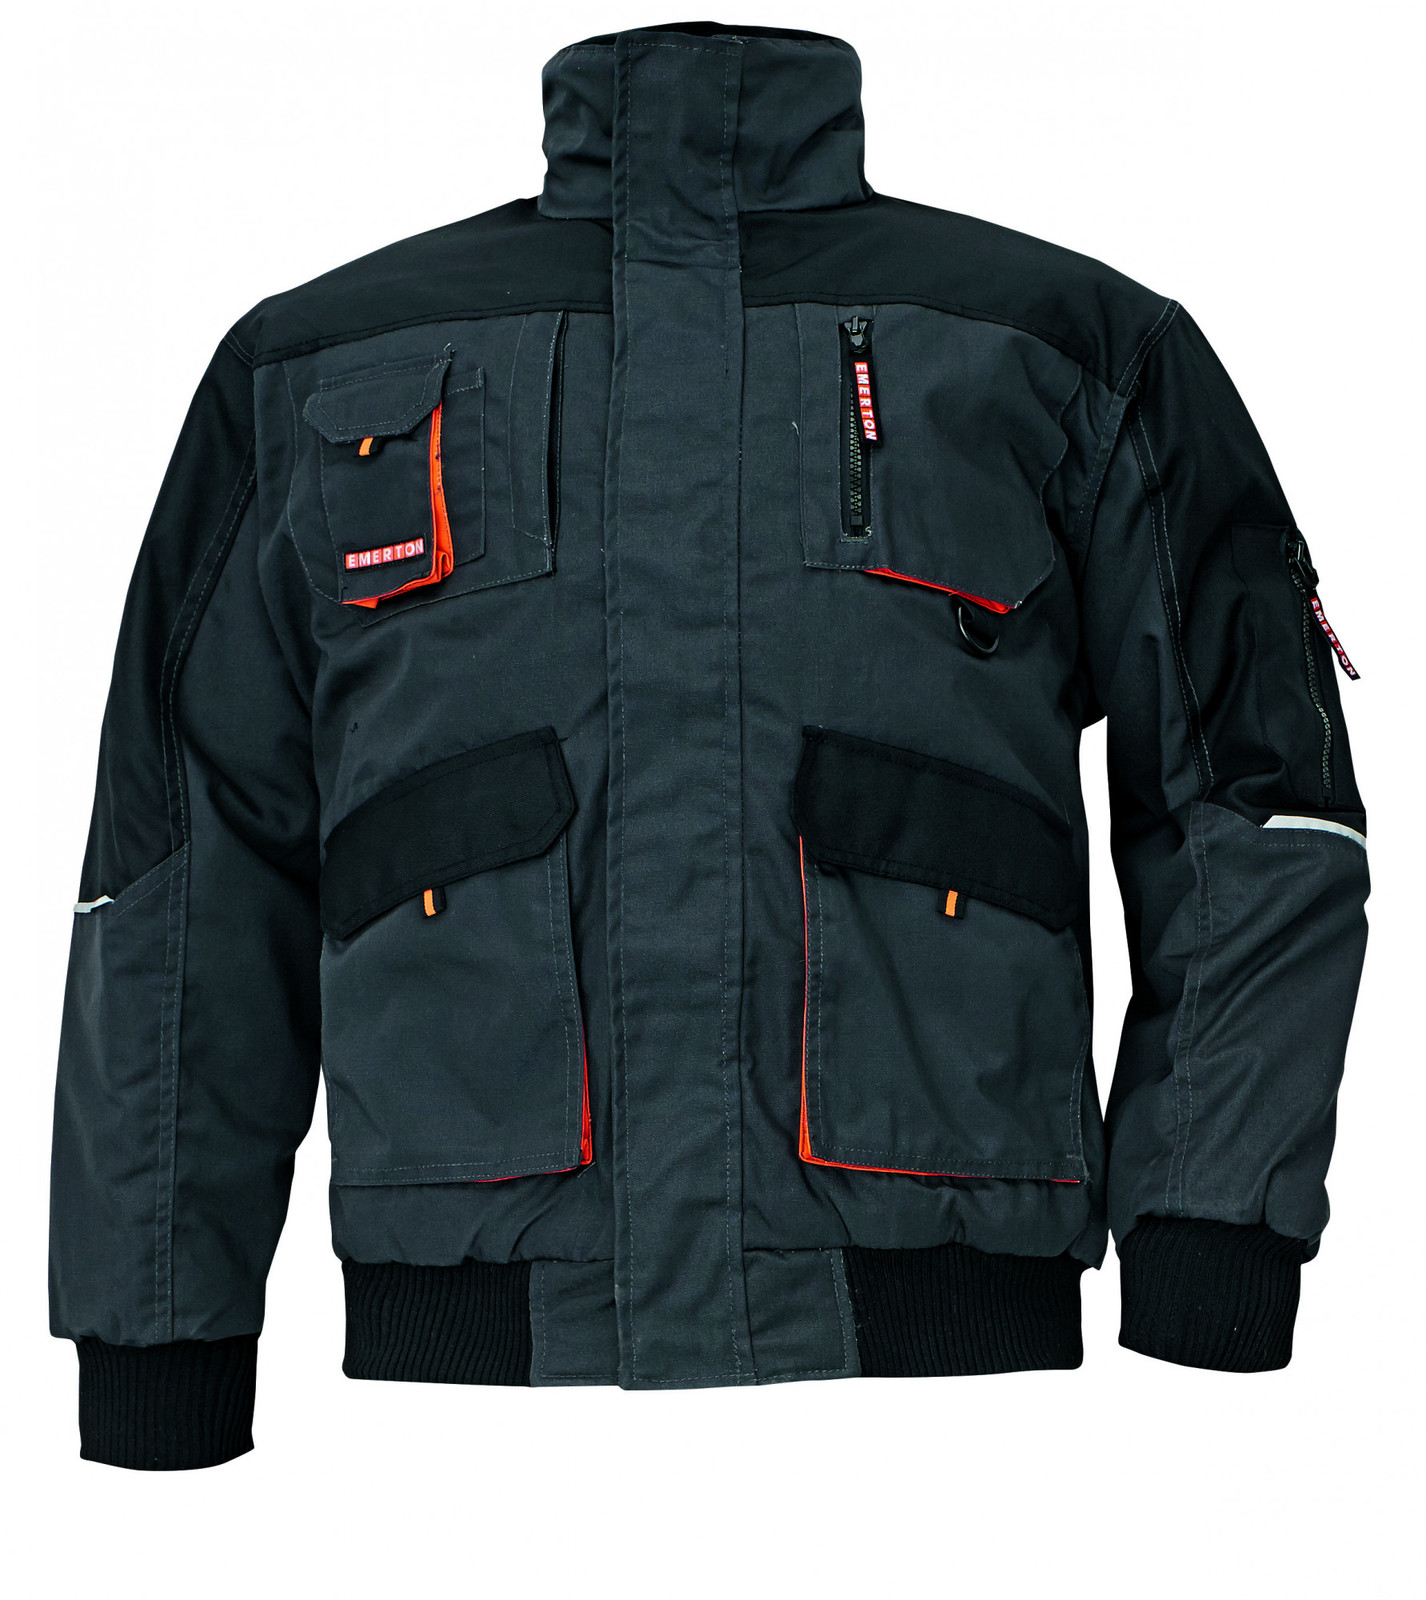 Zimná montérková bunda Emerton Pilot - veľkosť: L, farba: čierna